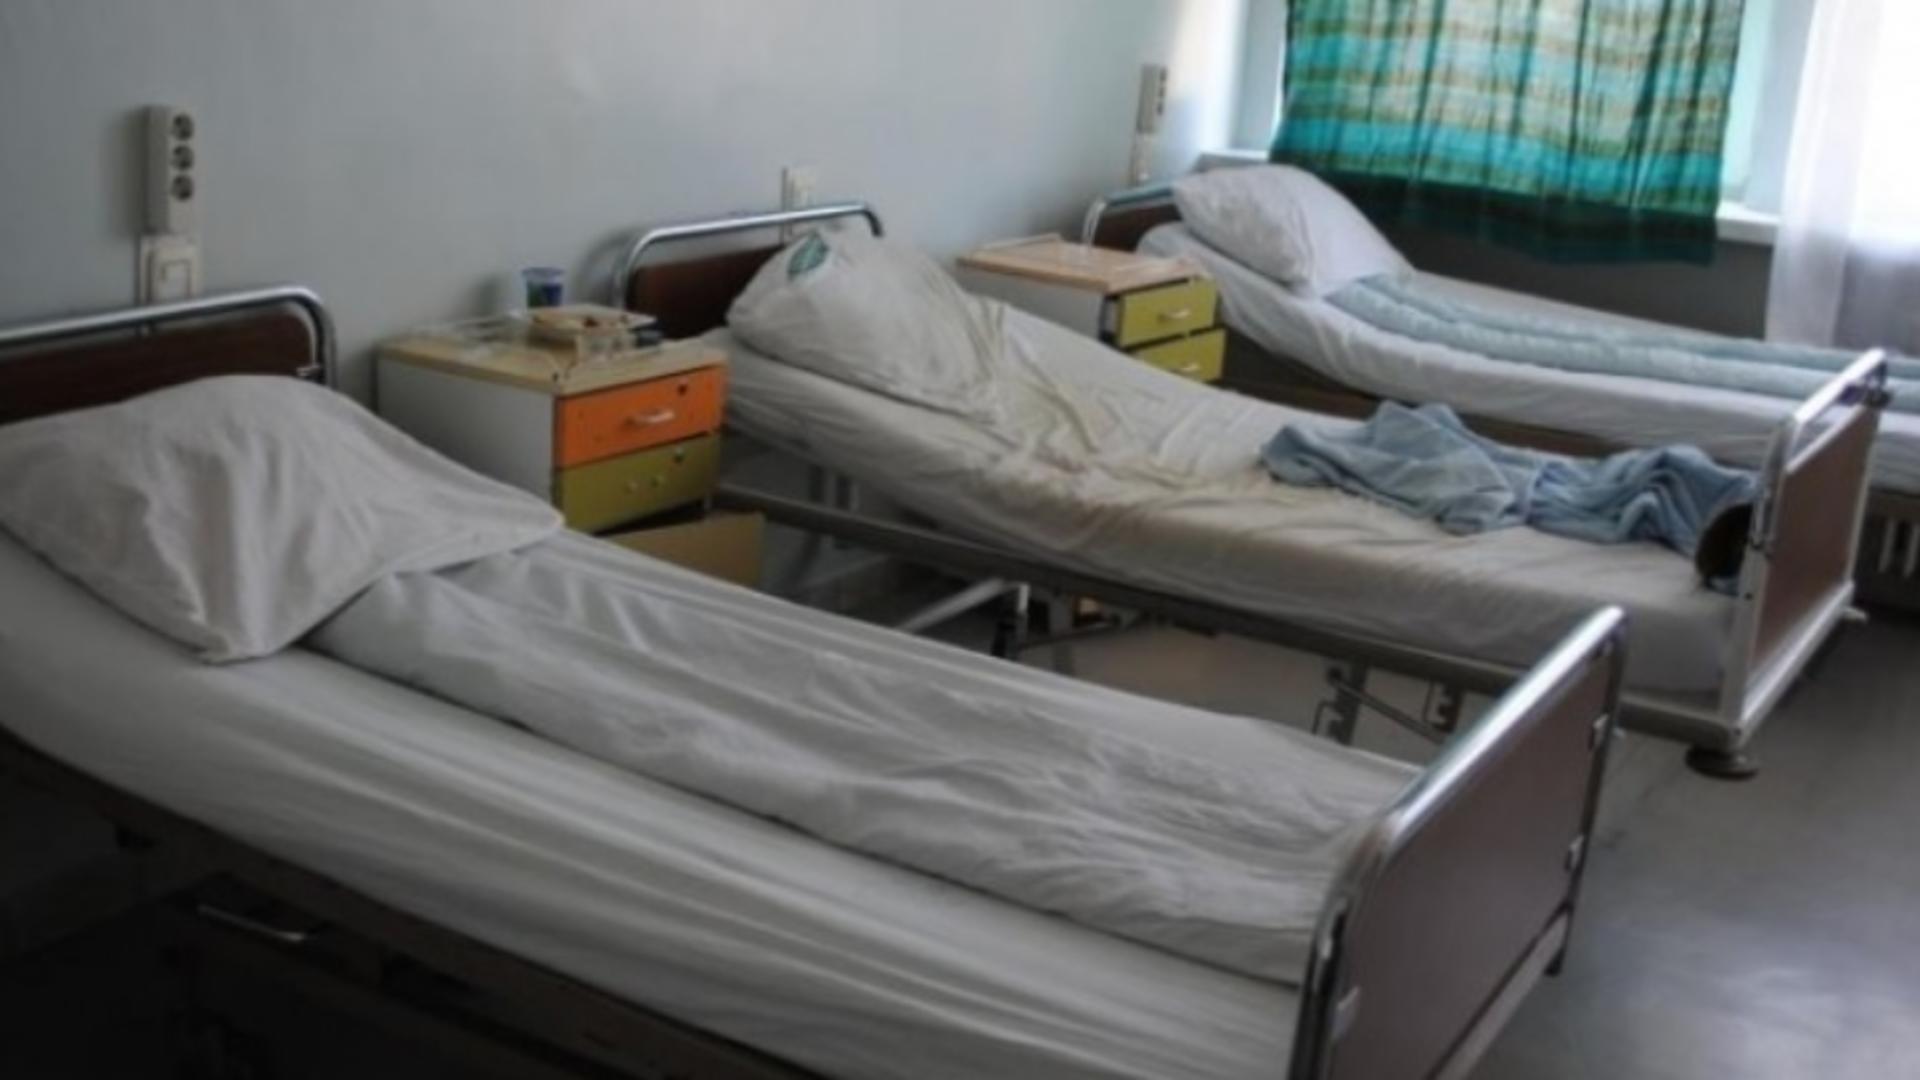 Spitalul Judeţean Târgu-Jiu, lăsat fără curent electric după o avarie. Ce se întâmplă cu pacienții